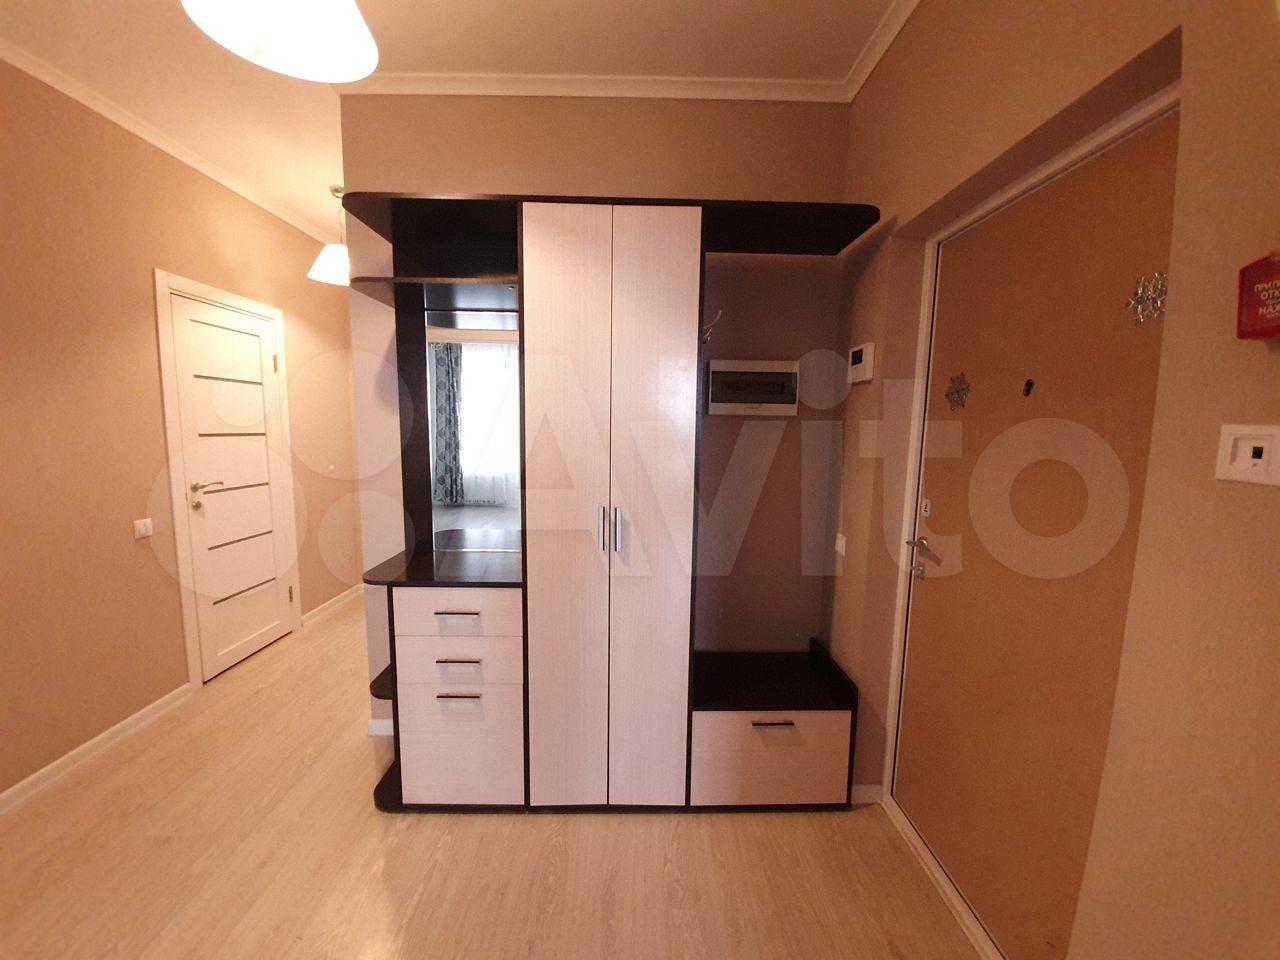 Хочу снять квартиру 2 комнатную без посредников в городе Красногорск